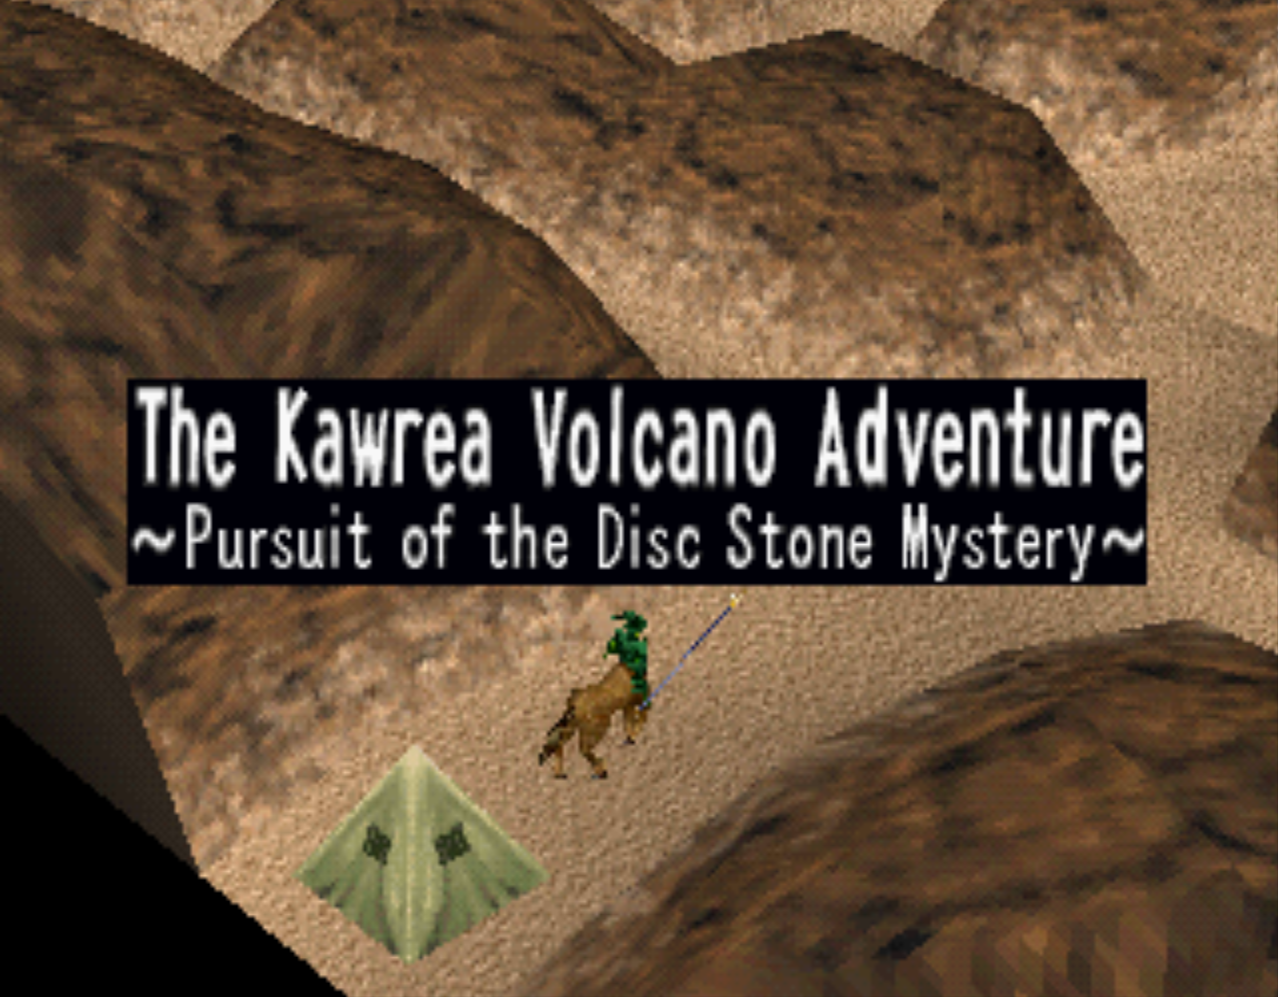 Kawrea Volcano Adventure